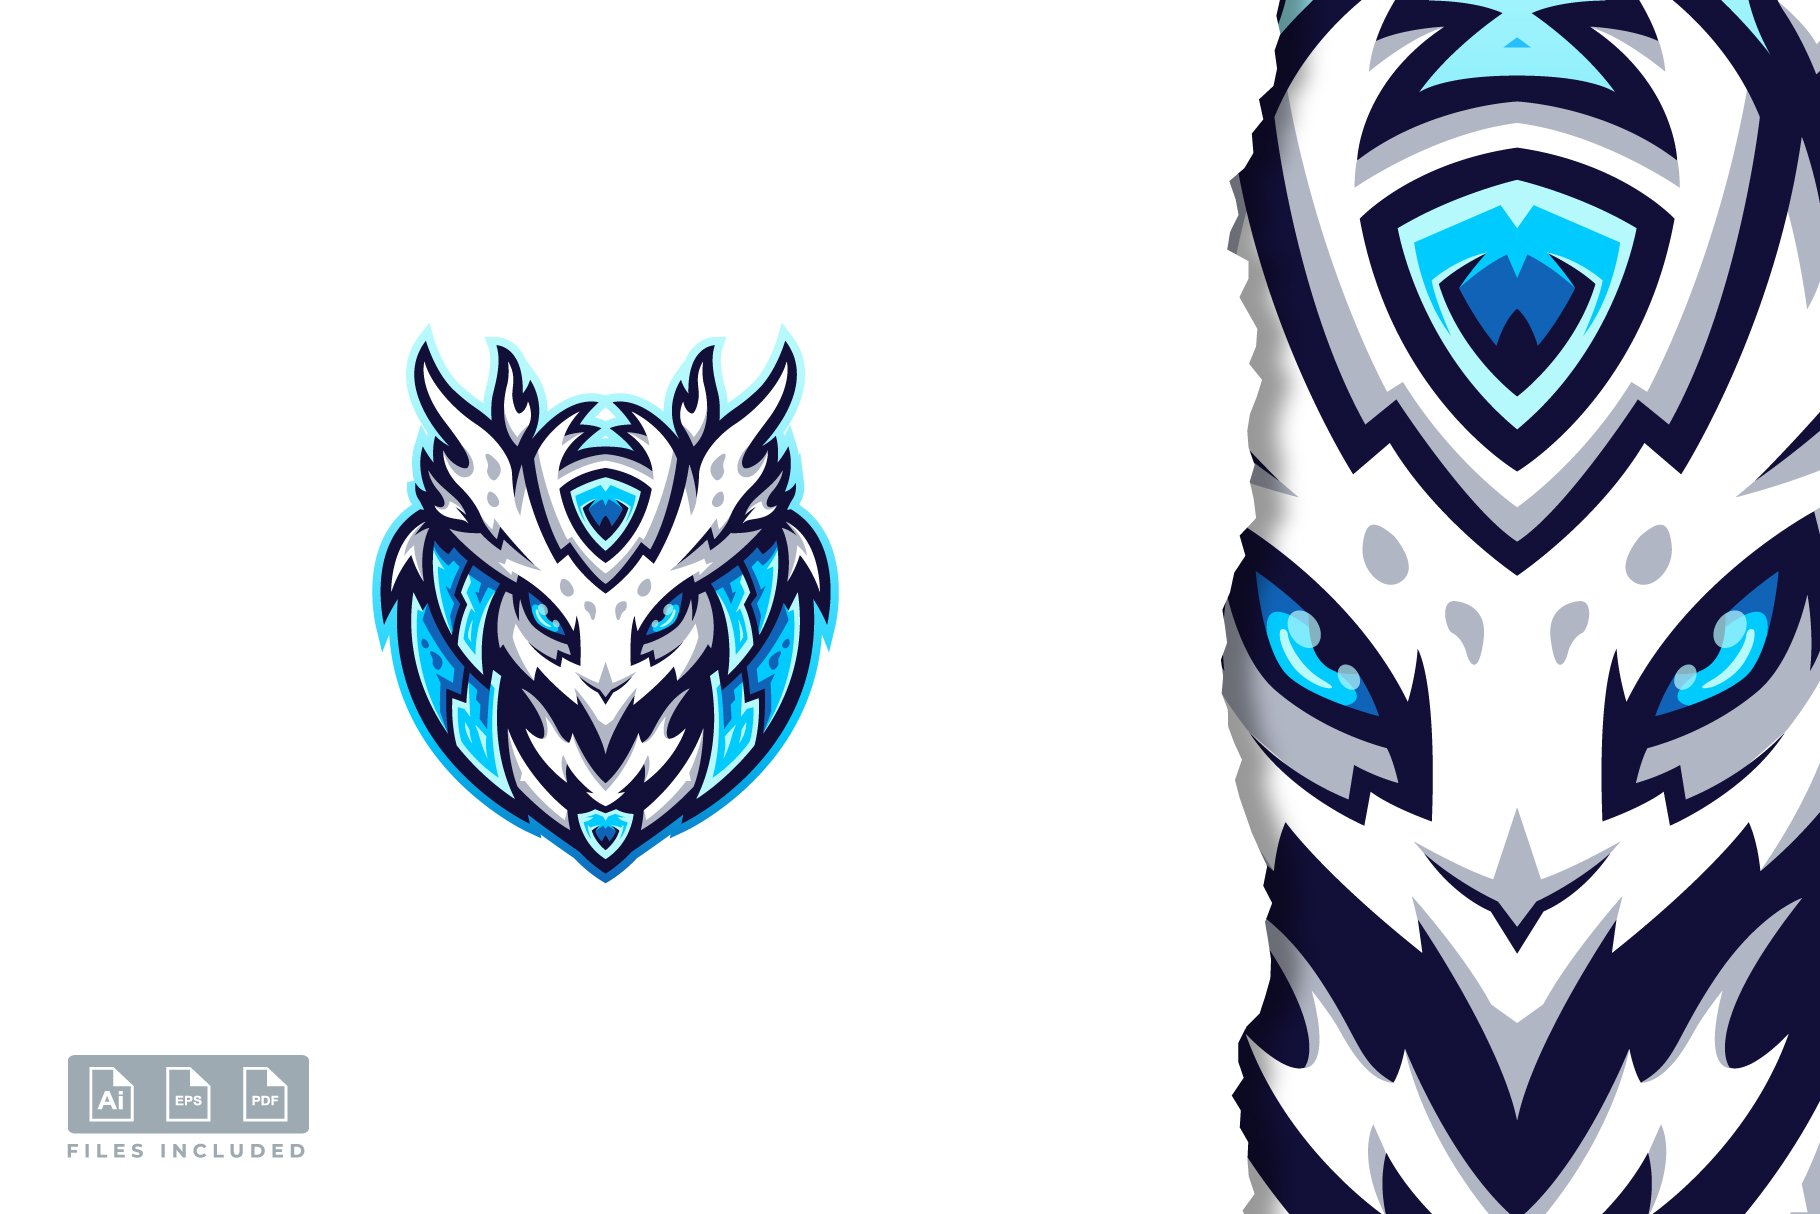 Owl head E-sport logo design cover image.